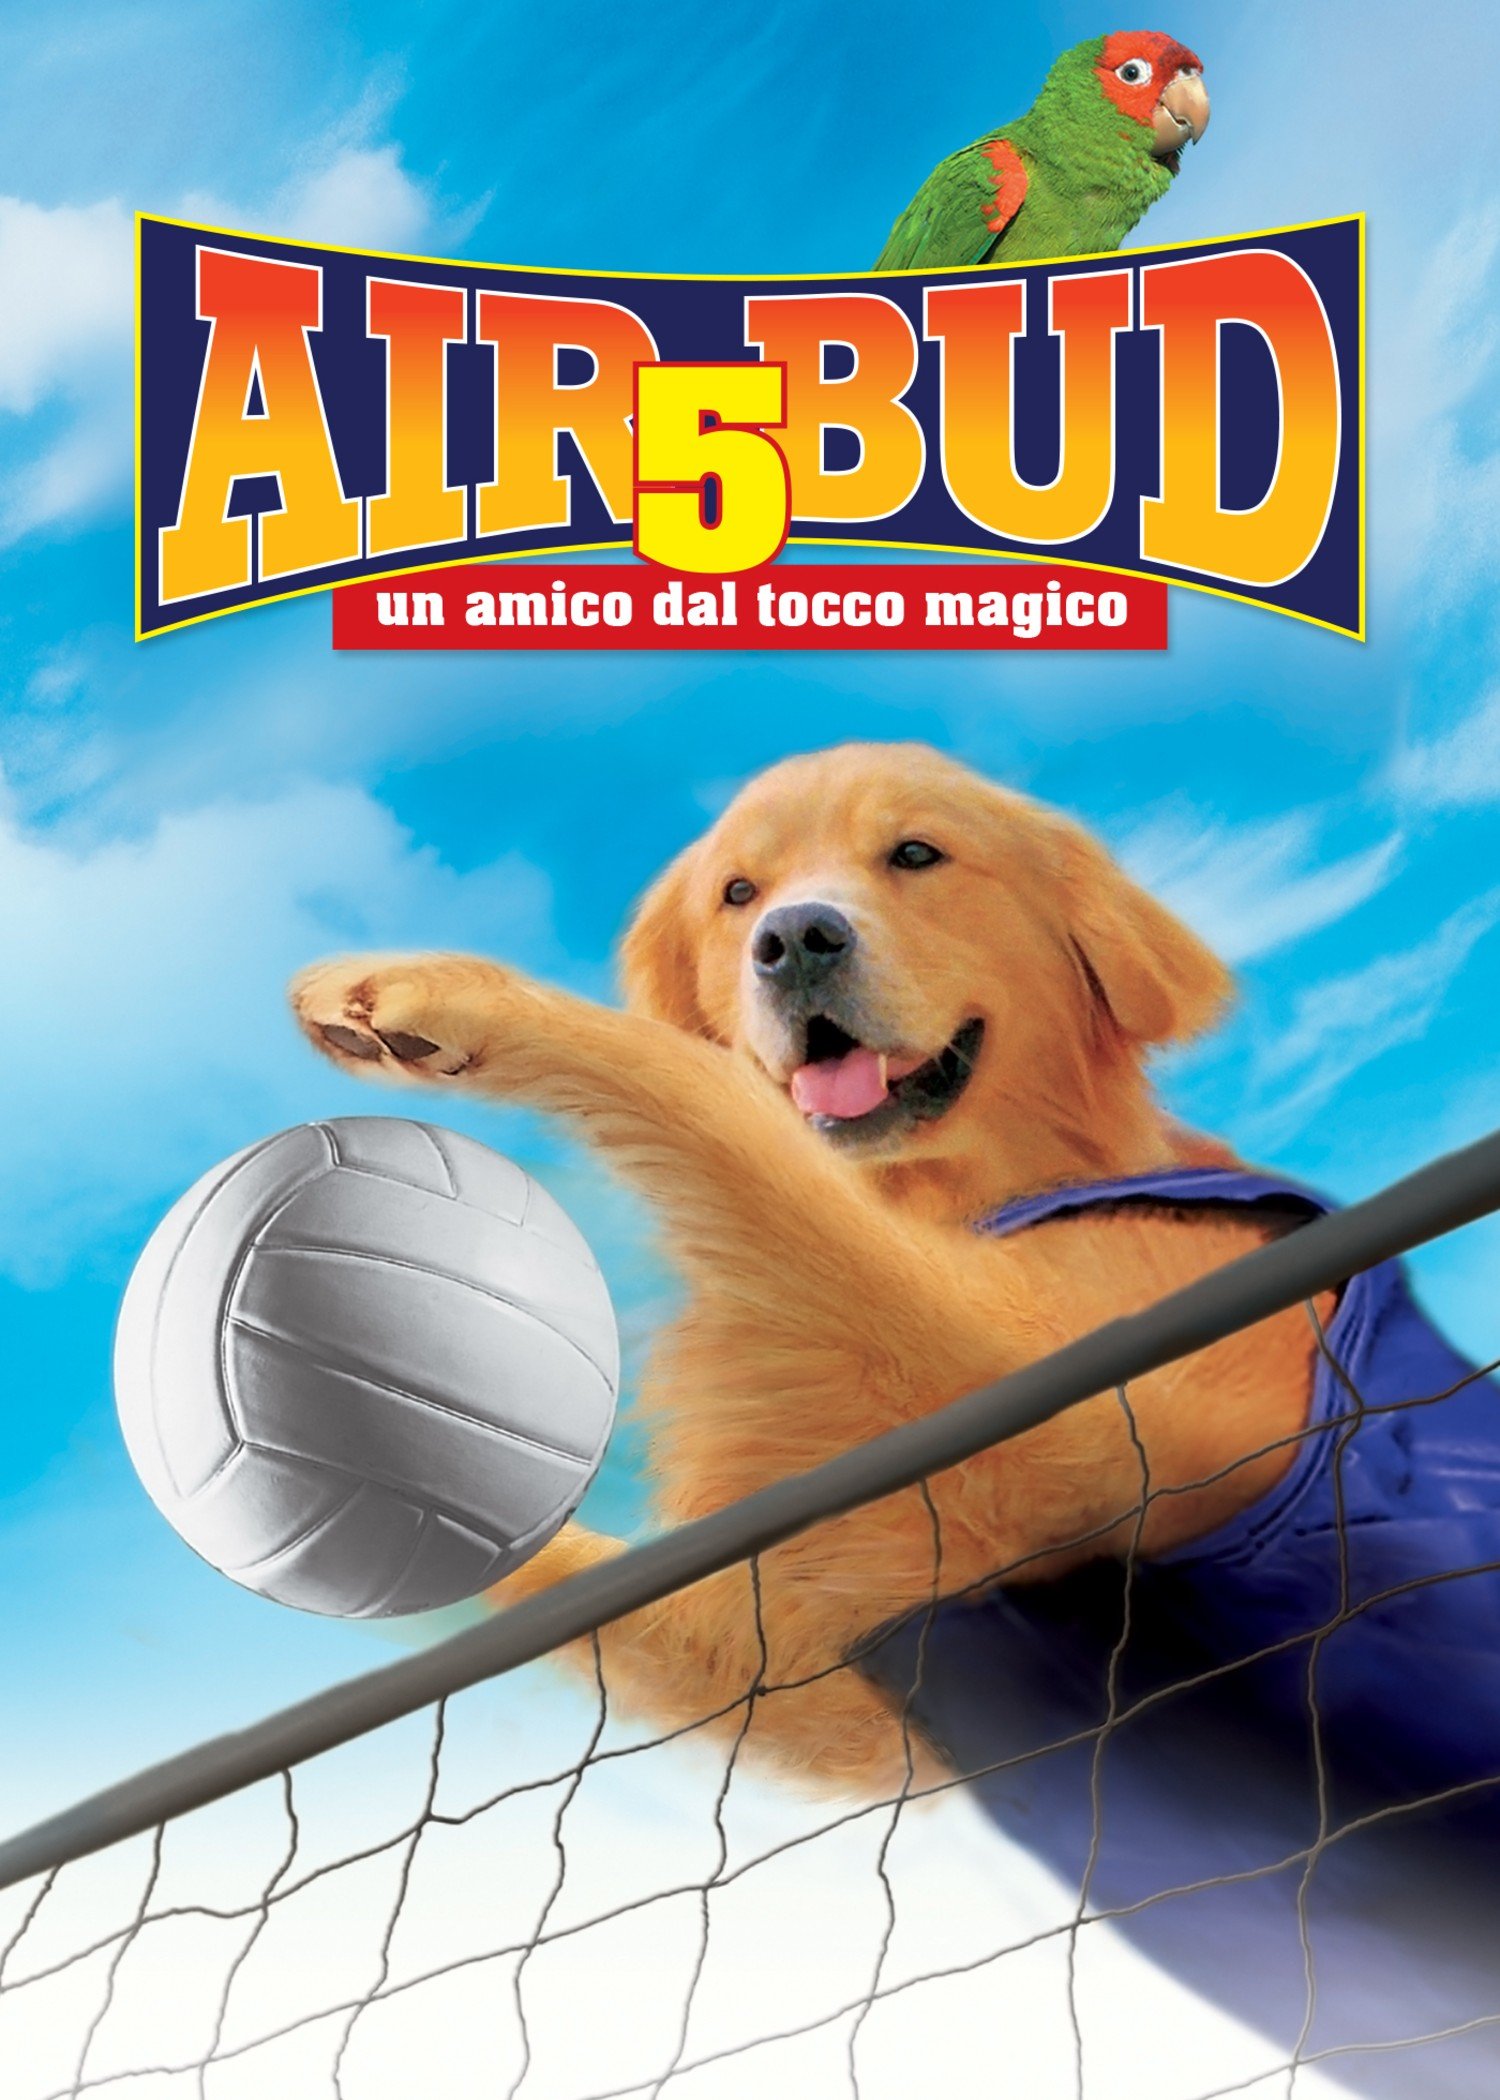 Air Bud 5: Un amico dal tocco magico [HD] (2003)